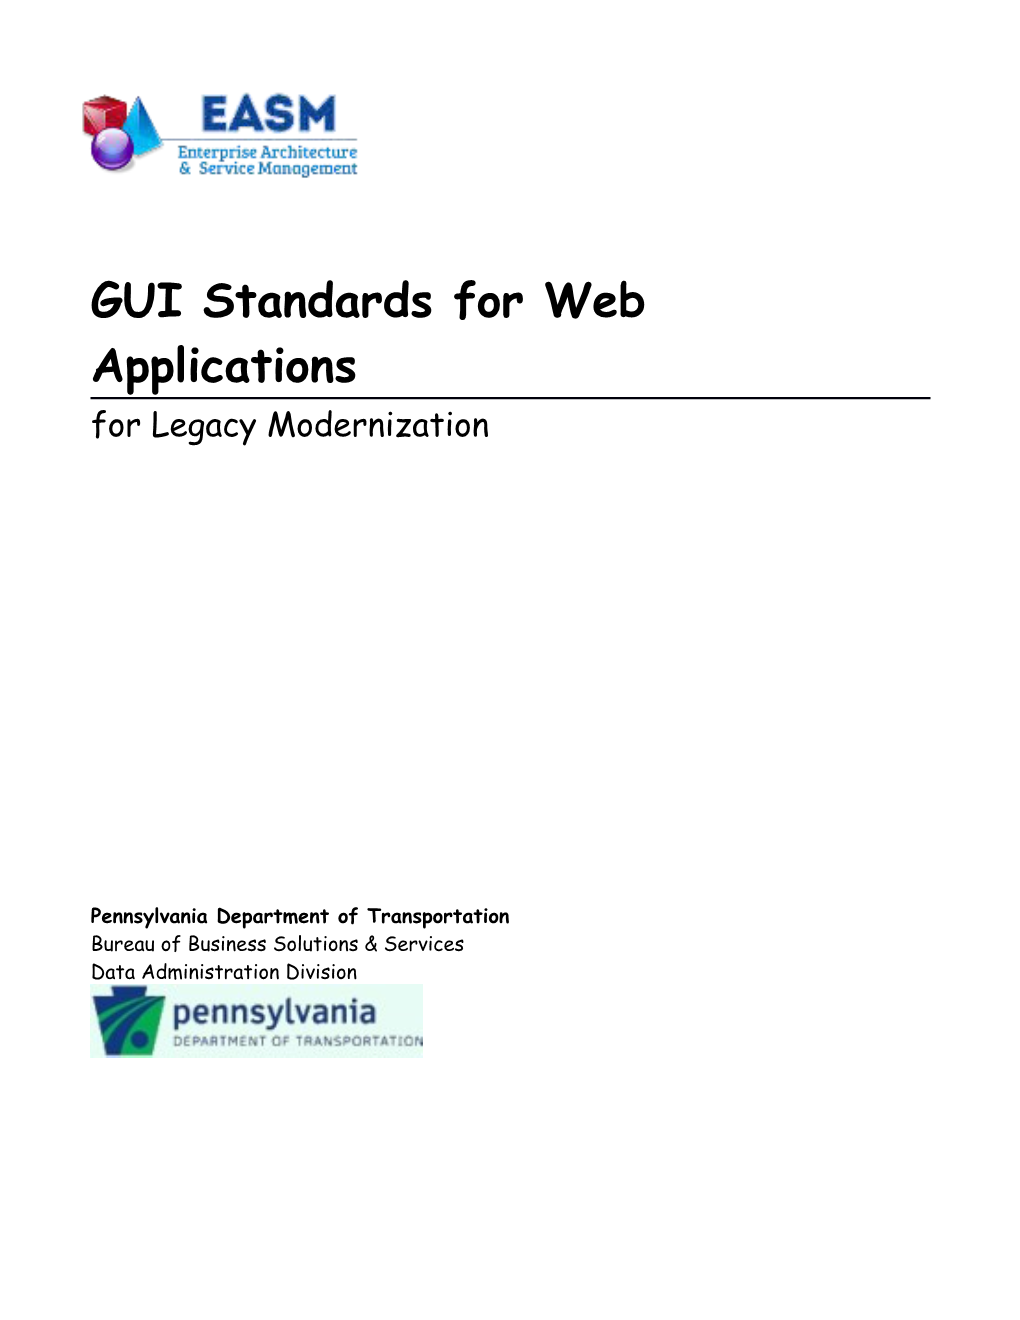 Appendix U - GUI Standards for Web Applications